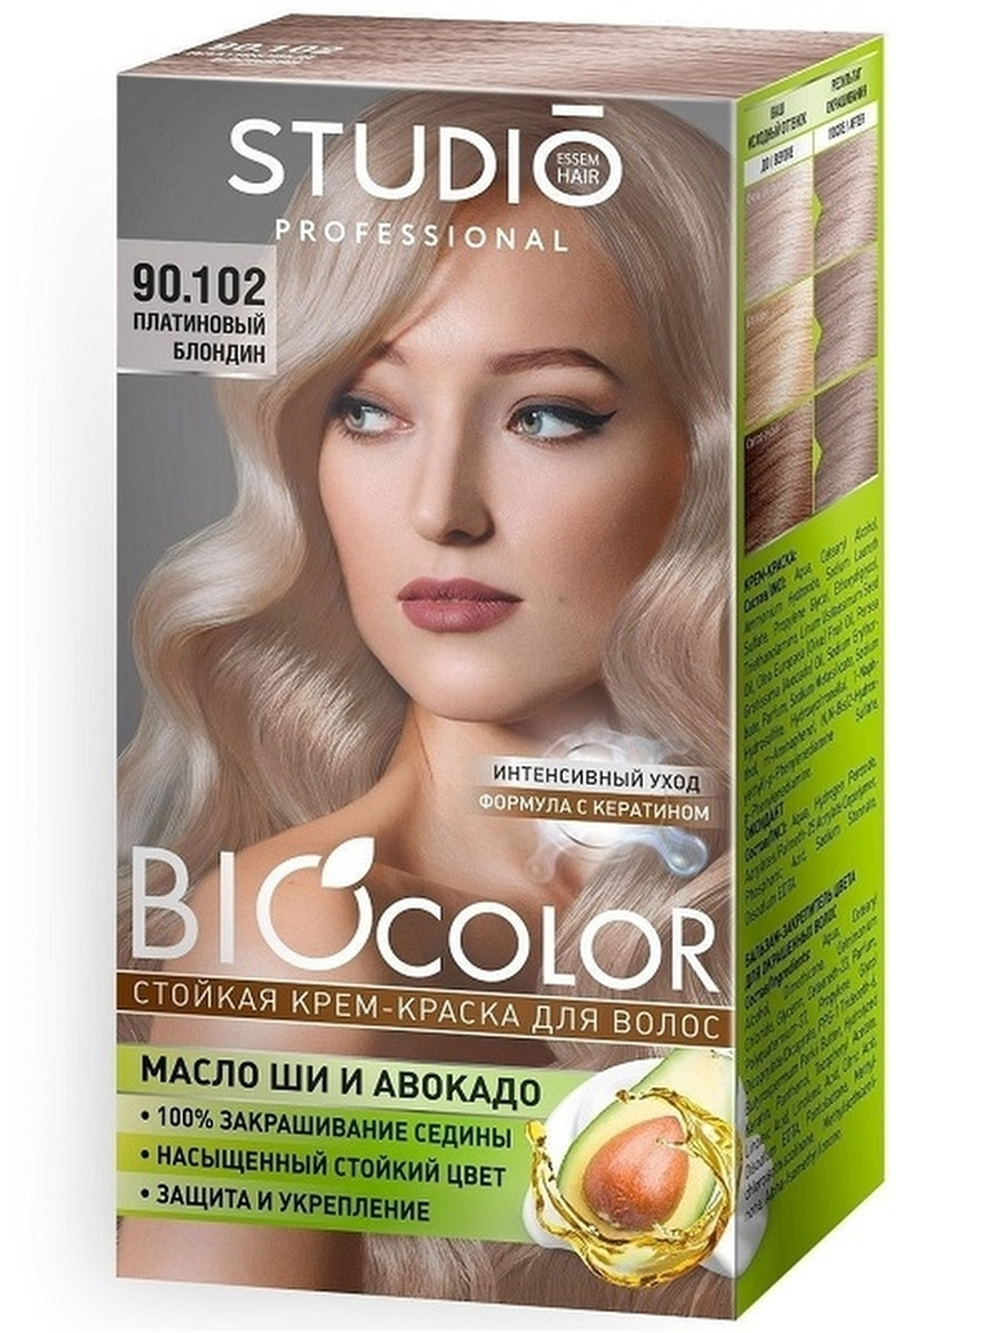 Essem Hair Studio Professional BioColor стойкая крем-краска для волос,90.102 Платиновый блондин, 115 мл